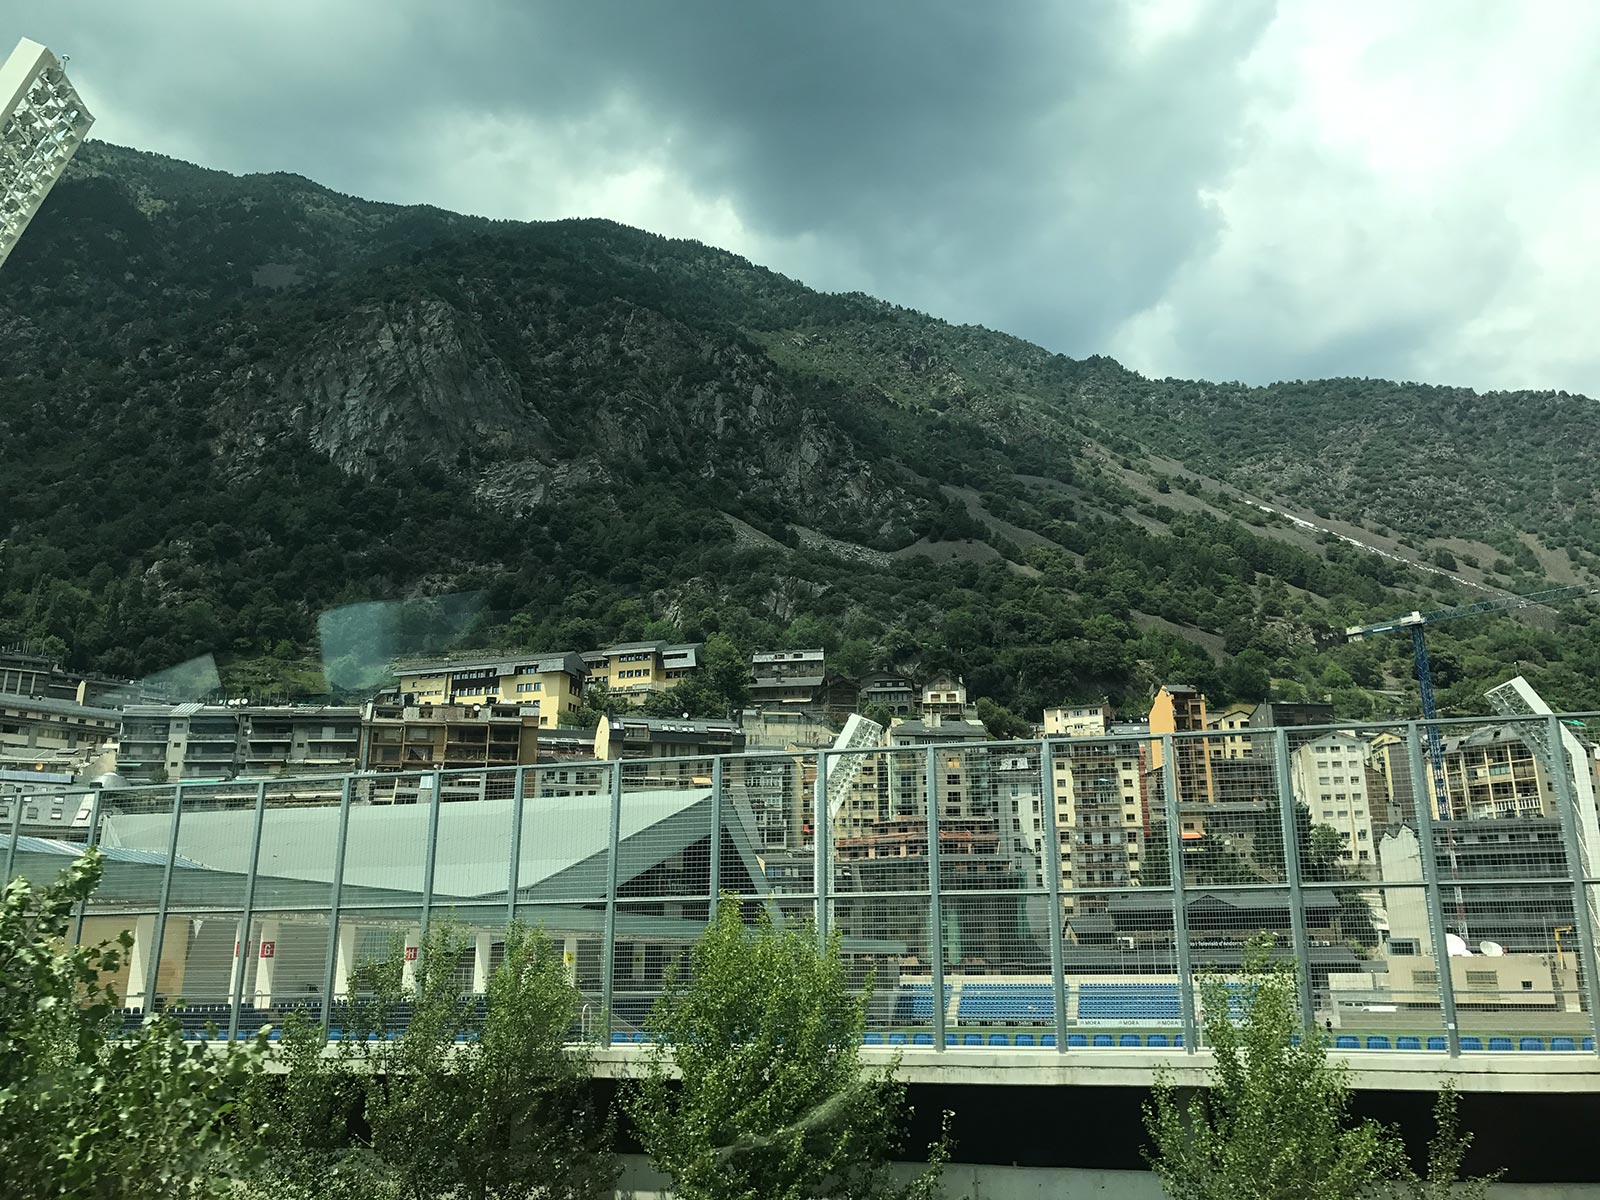 Mountains near Andorra la Vella, Andorra. Andorra, Barcelona & Malta